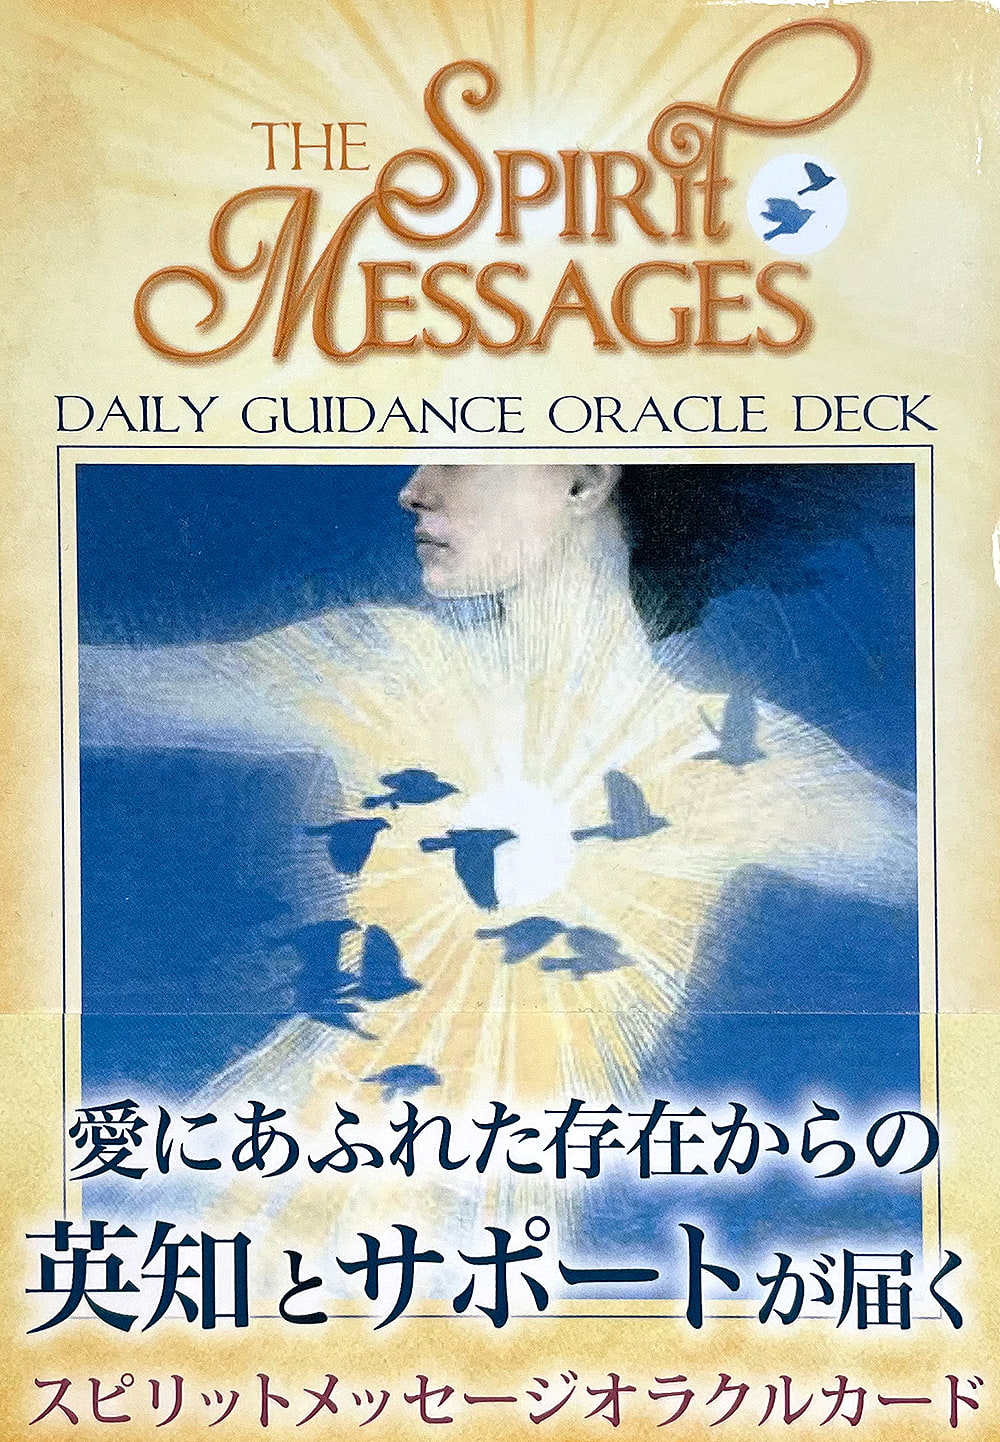 スピリットメッセージオラクルカード - THE SPIRIT MESSAGES ORACLE CARDS